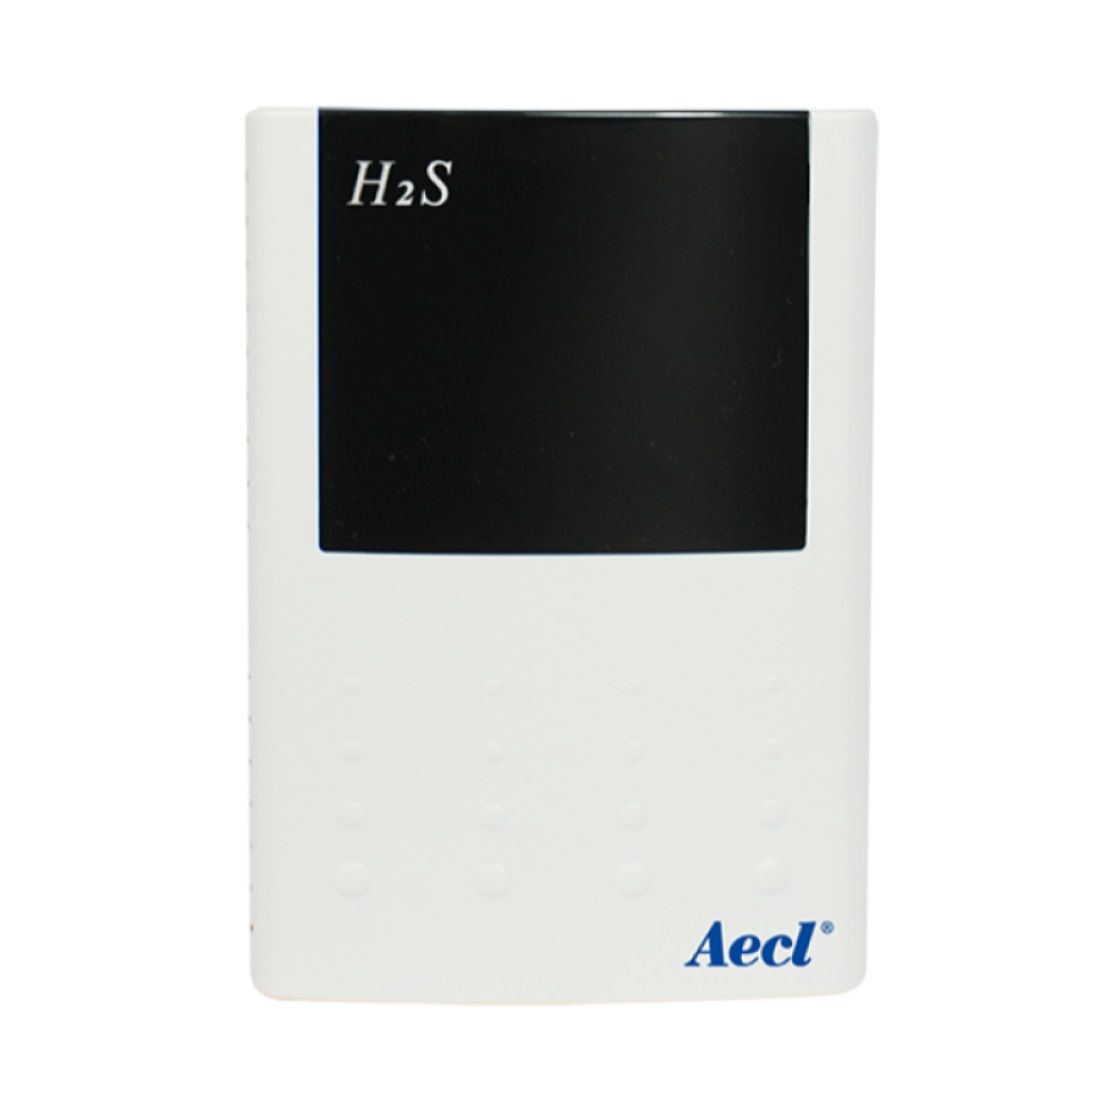 Беспроводное решение для мониторинга окружающей среды H2S.